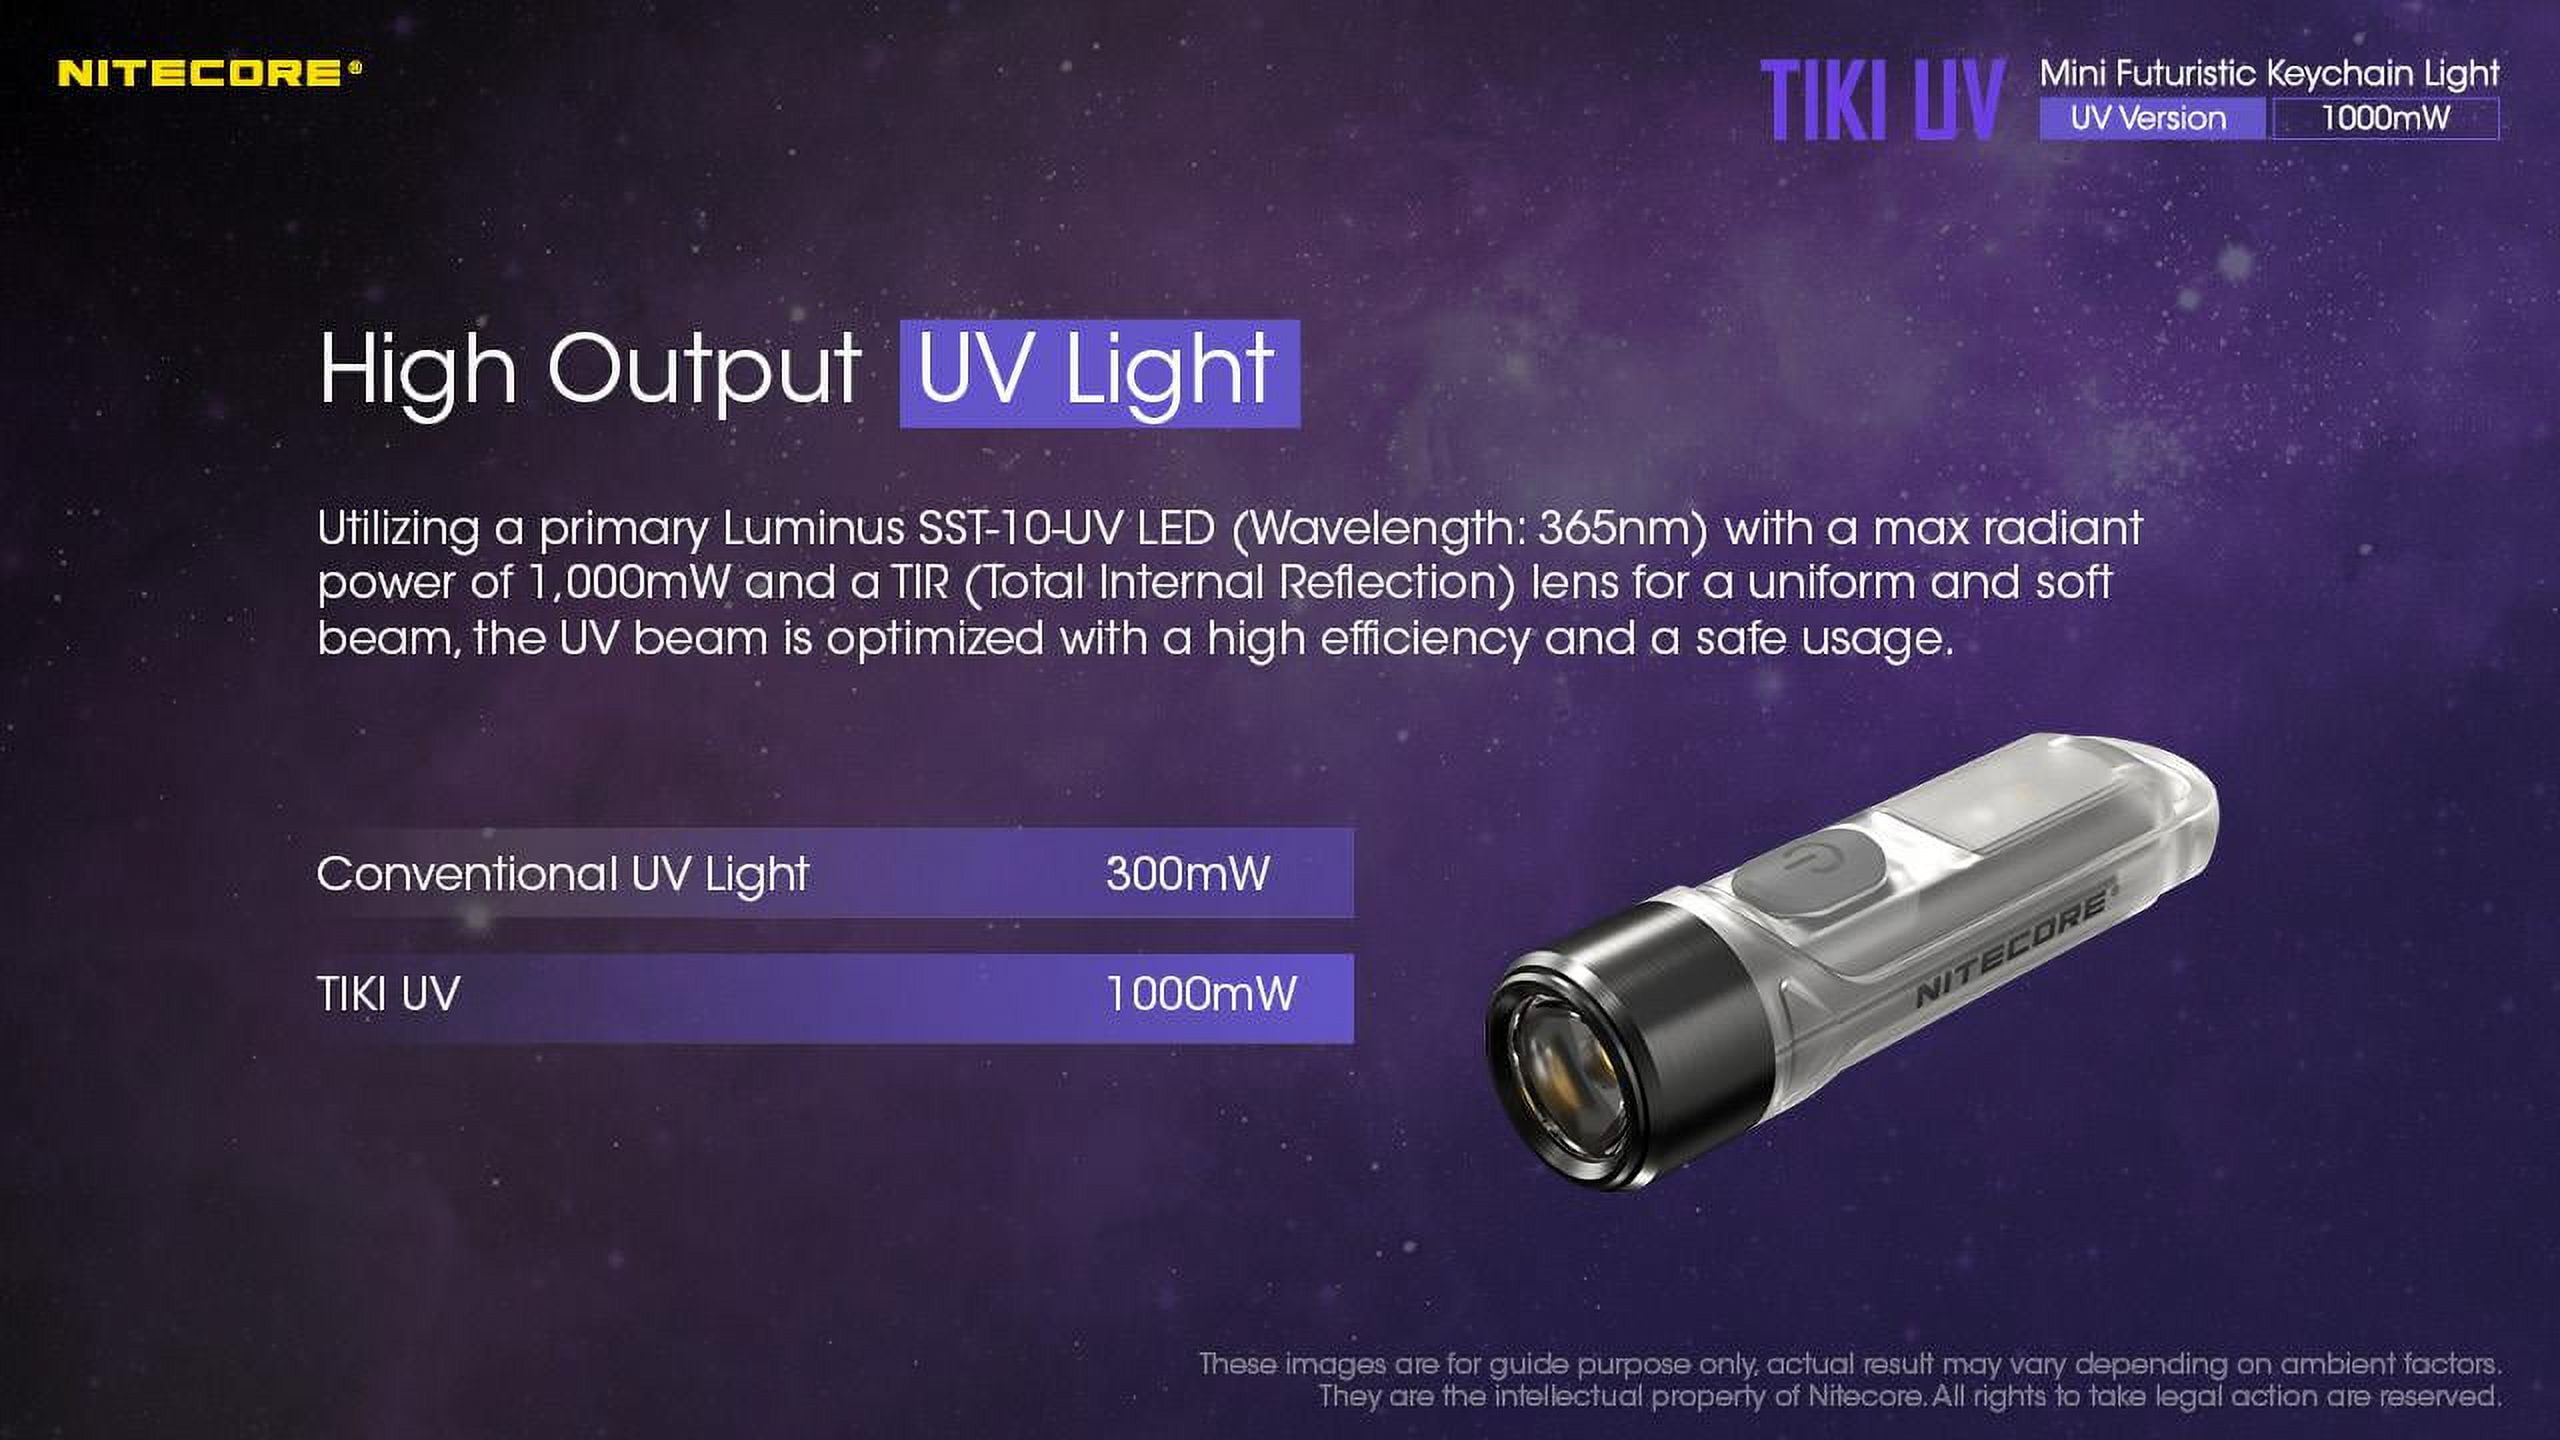 Mini lampe torche led UV Nitecore TIKI UV Keychain Light